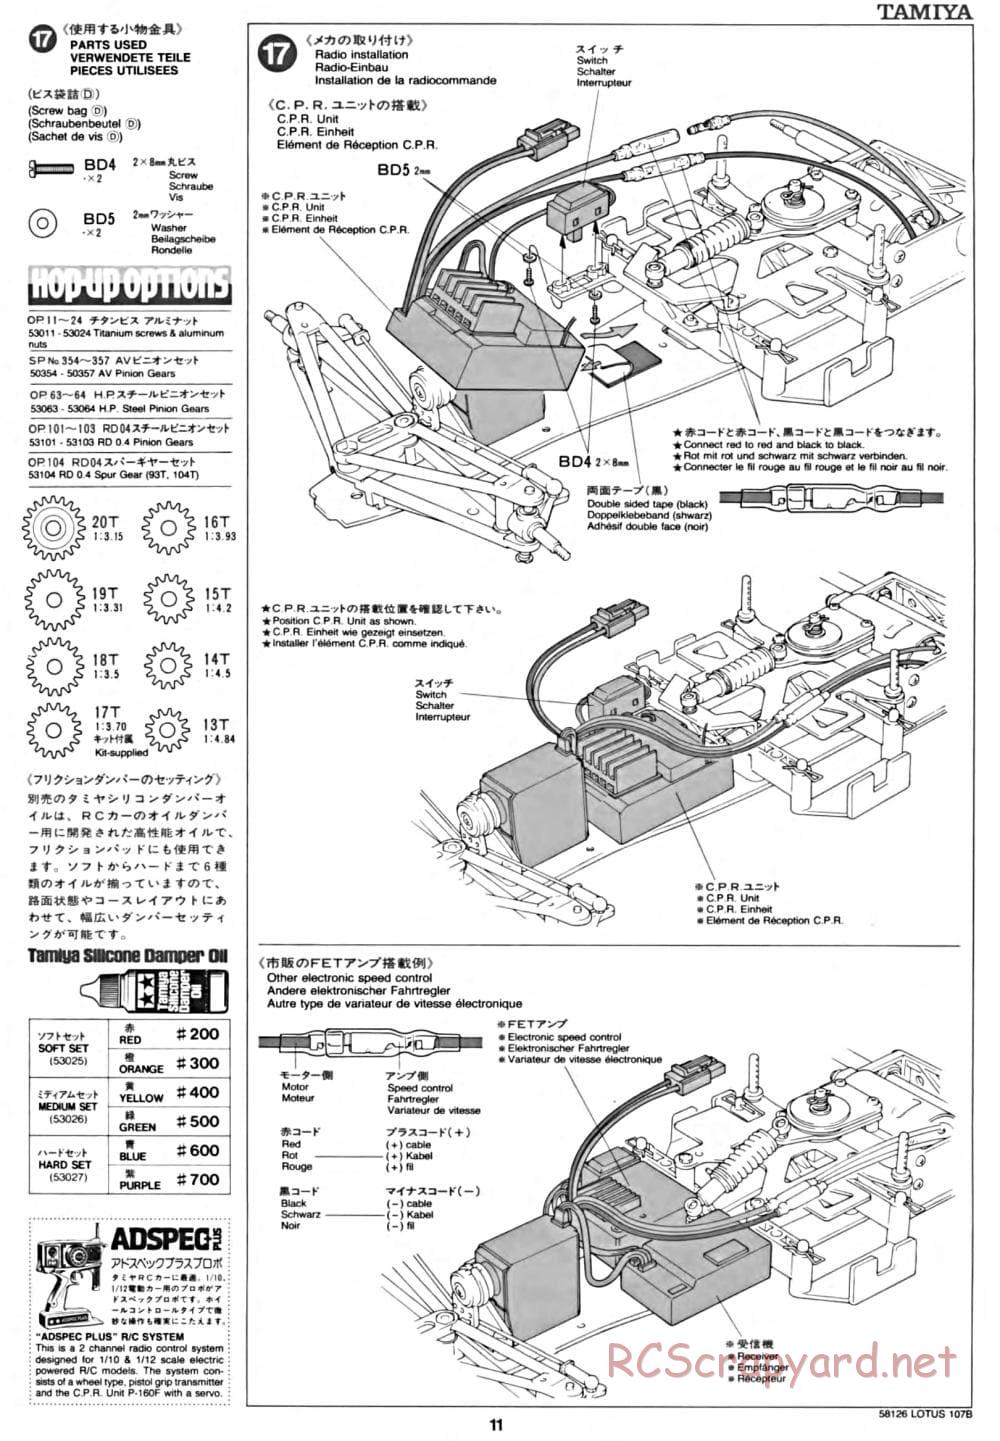 Tamiya - Lotus 107B Ford - F103 Chassis - Manual - Page 11